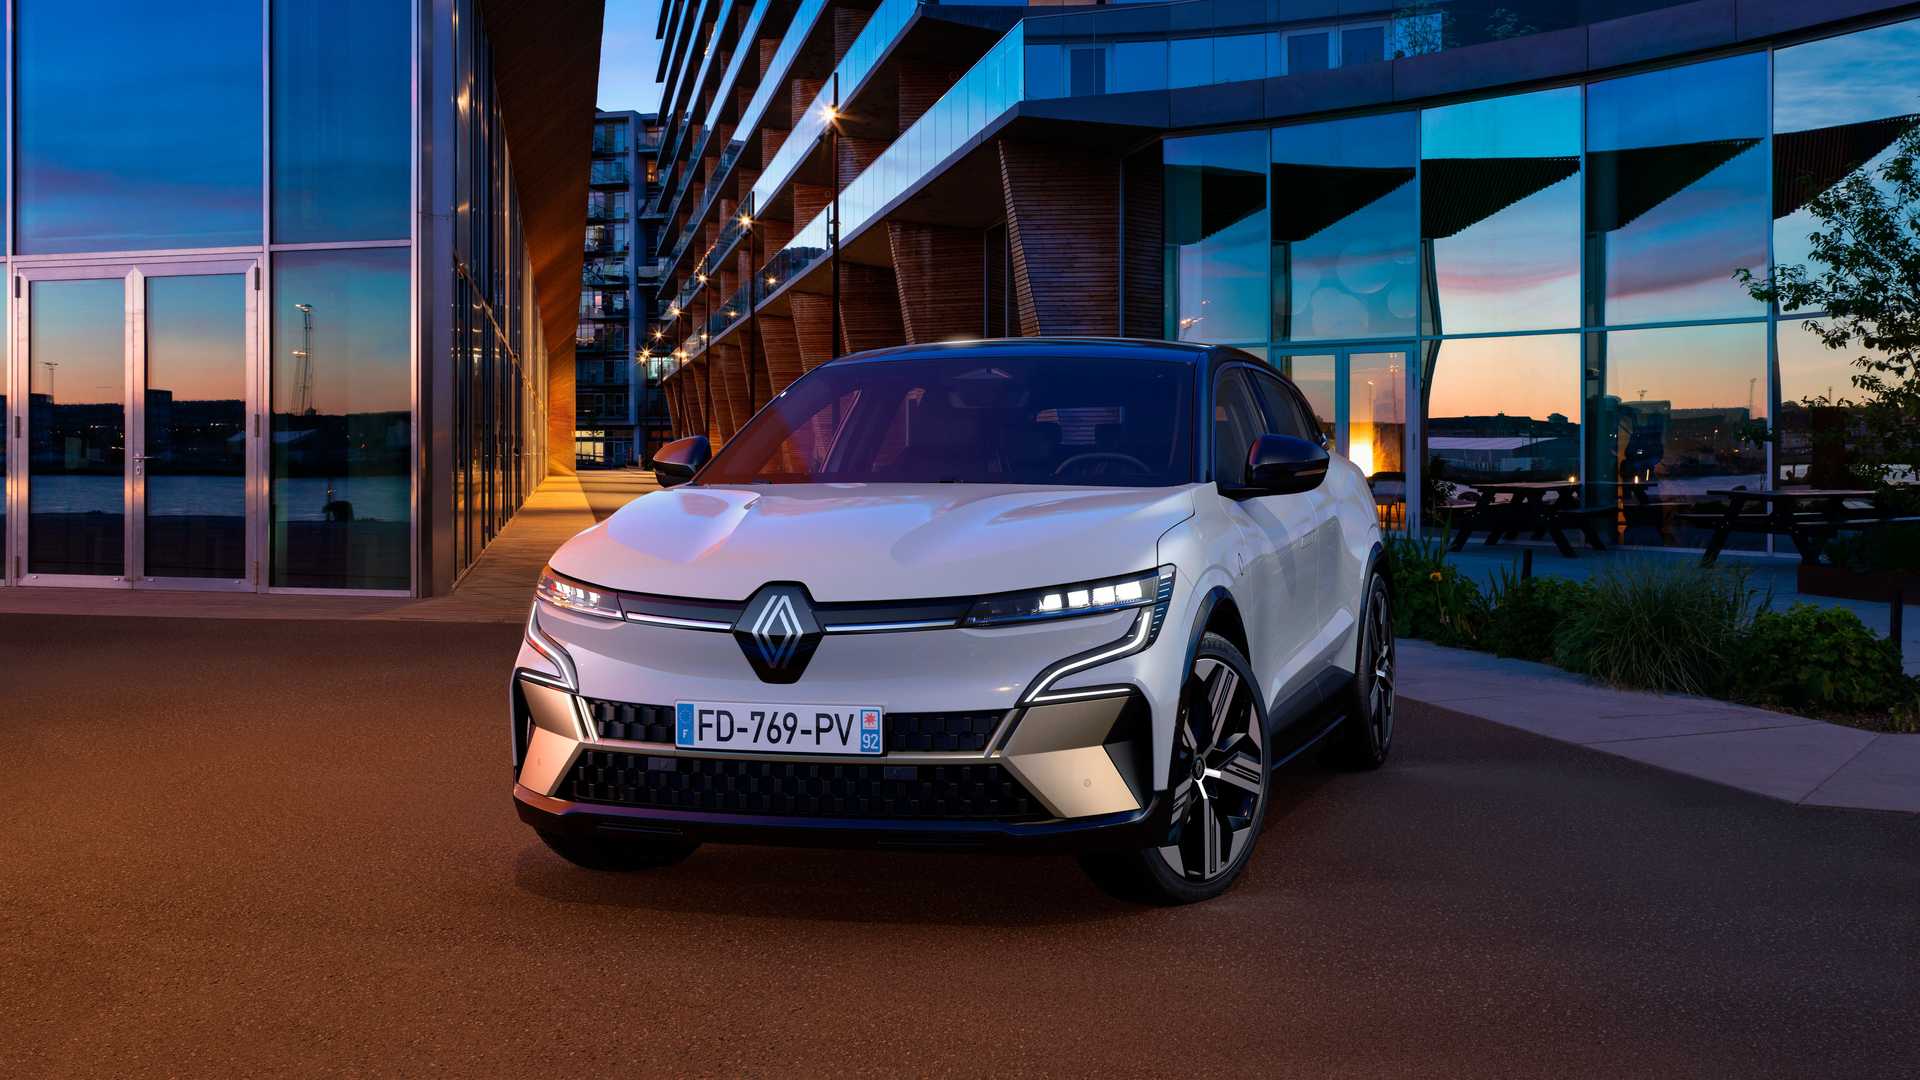 İşte yeni gövde ve yeni logoyla elektrikli Renault Megane E-Tech Electric karşınızda!